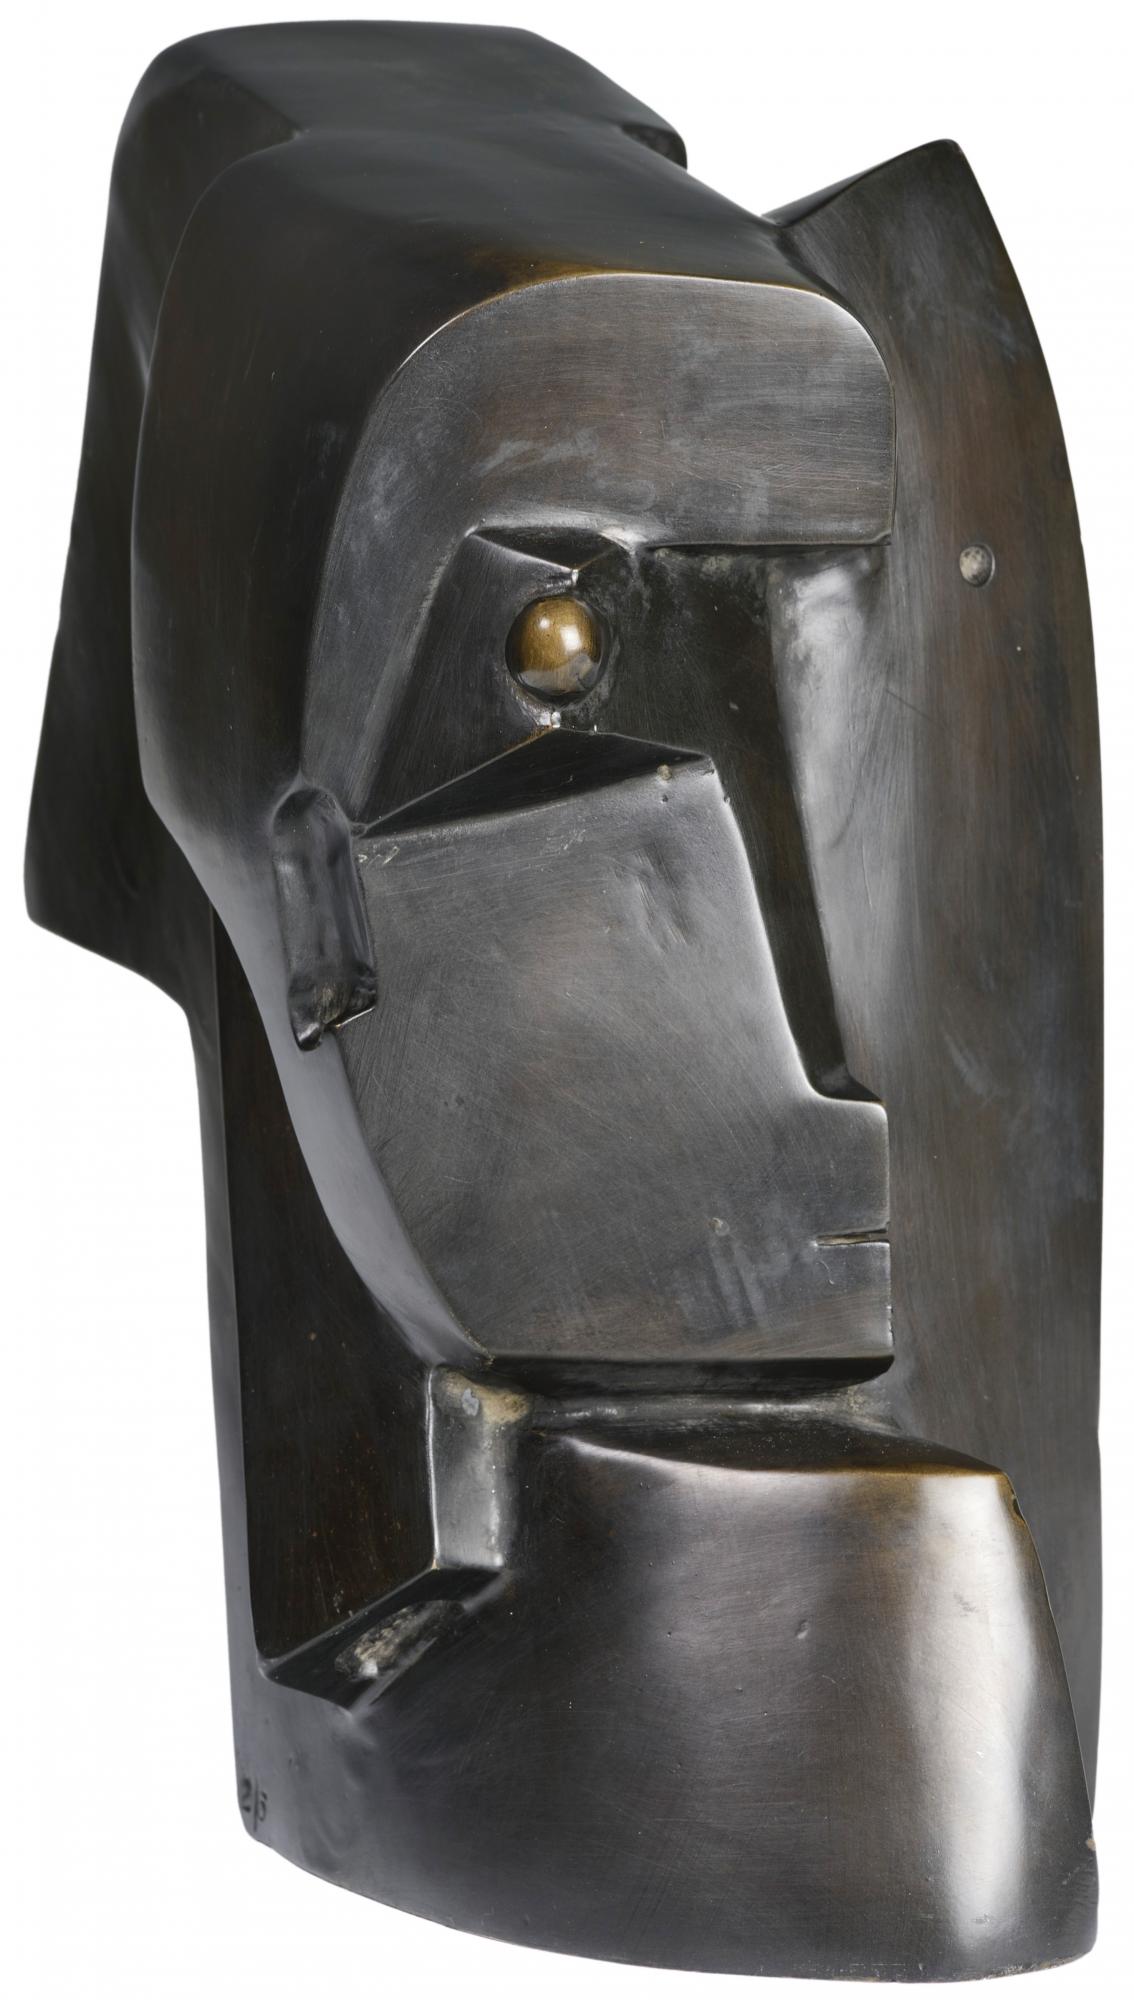 Otto Gutfreund: Hlava ženy bronz / výška 26,5 cm cena: 919 080 Kč / European Arts, 6. 3. 2016